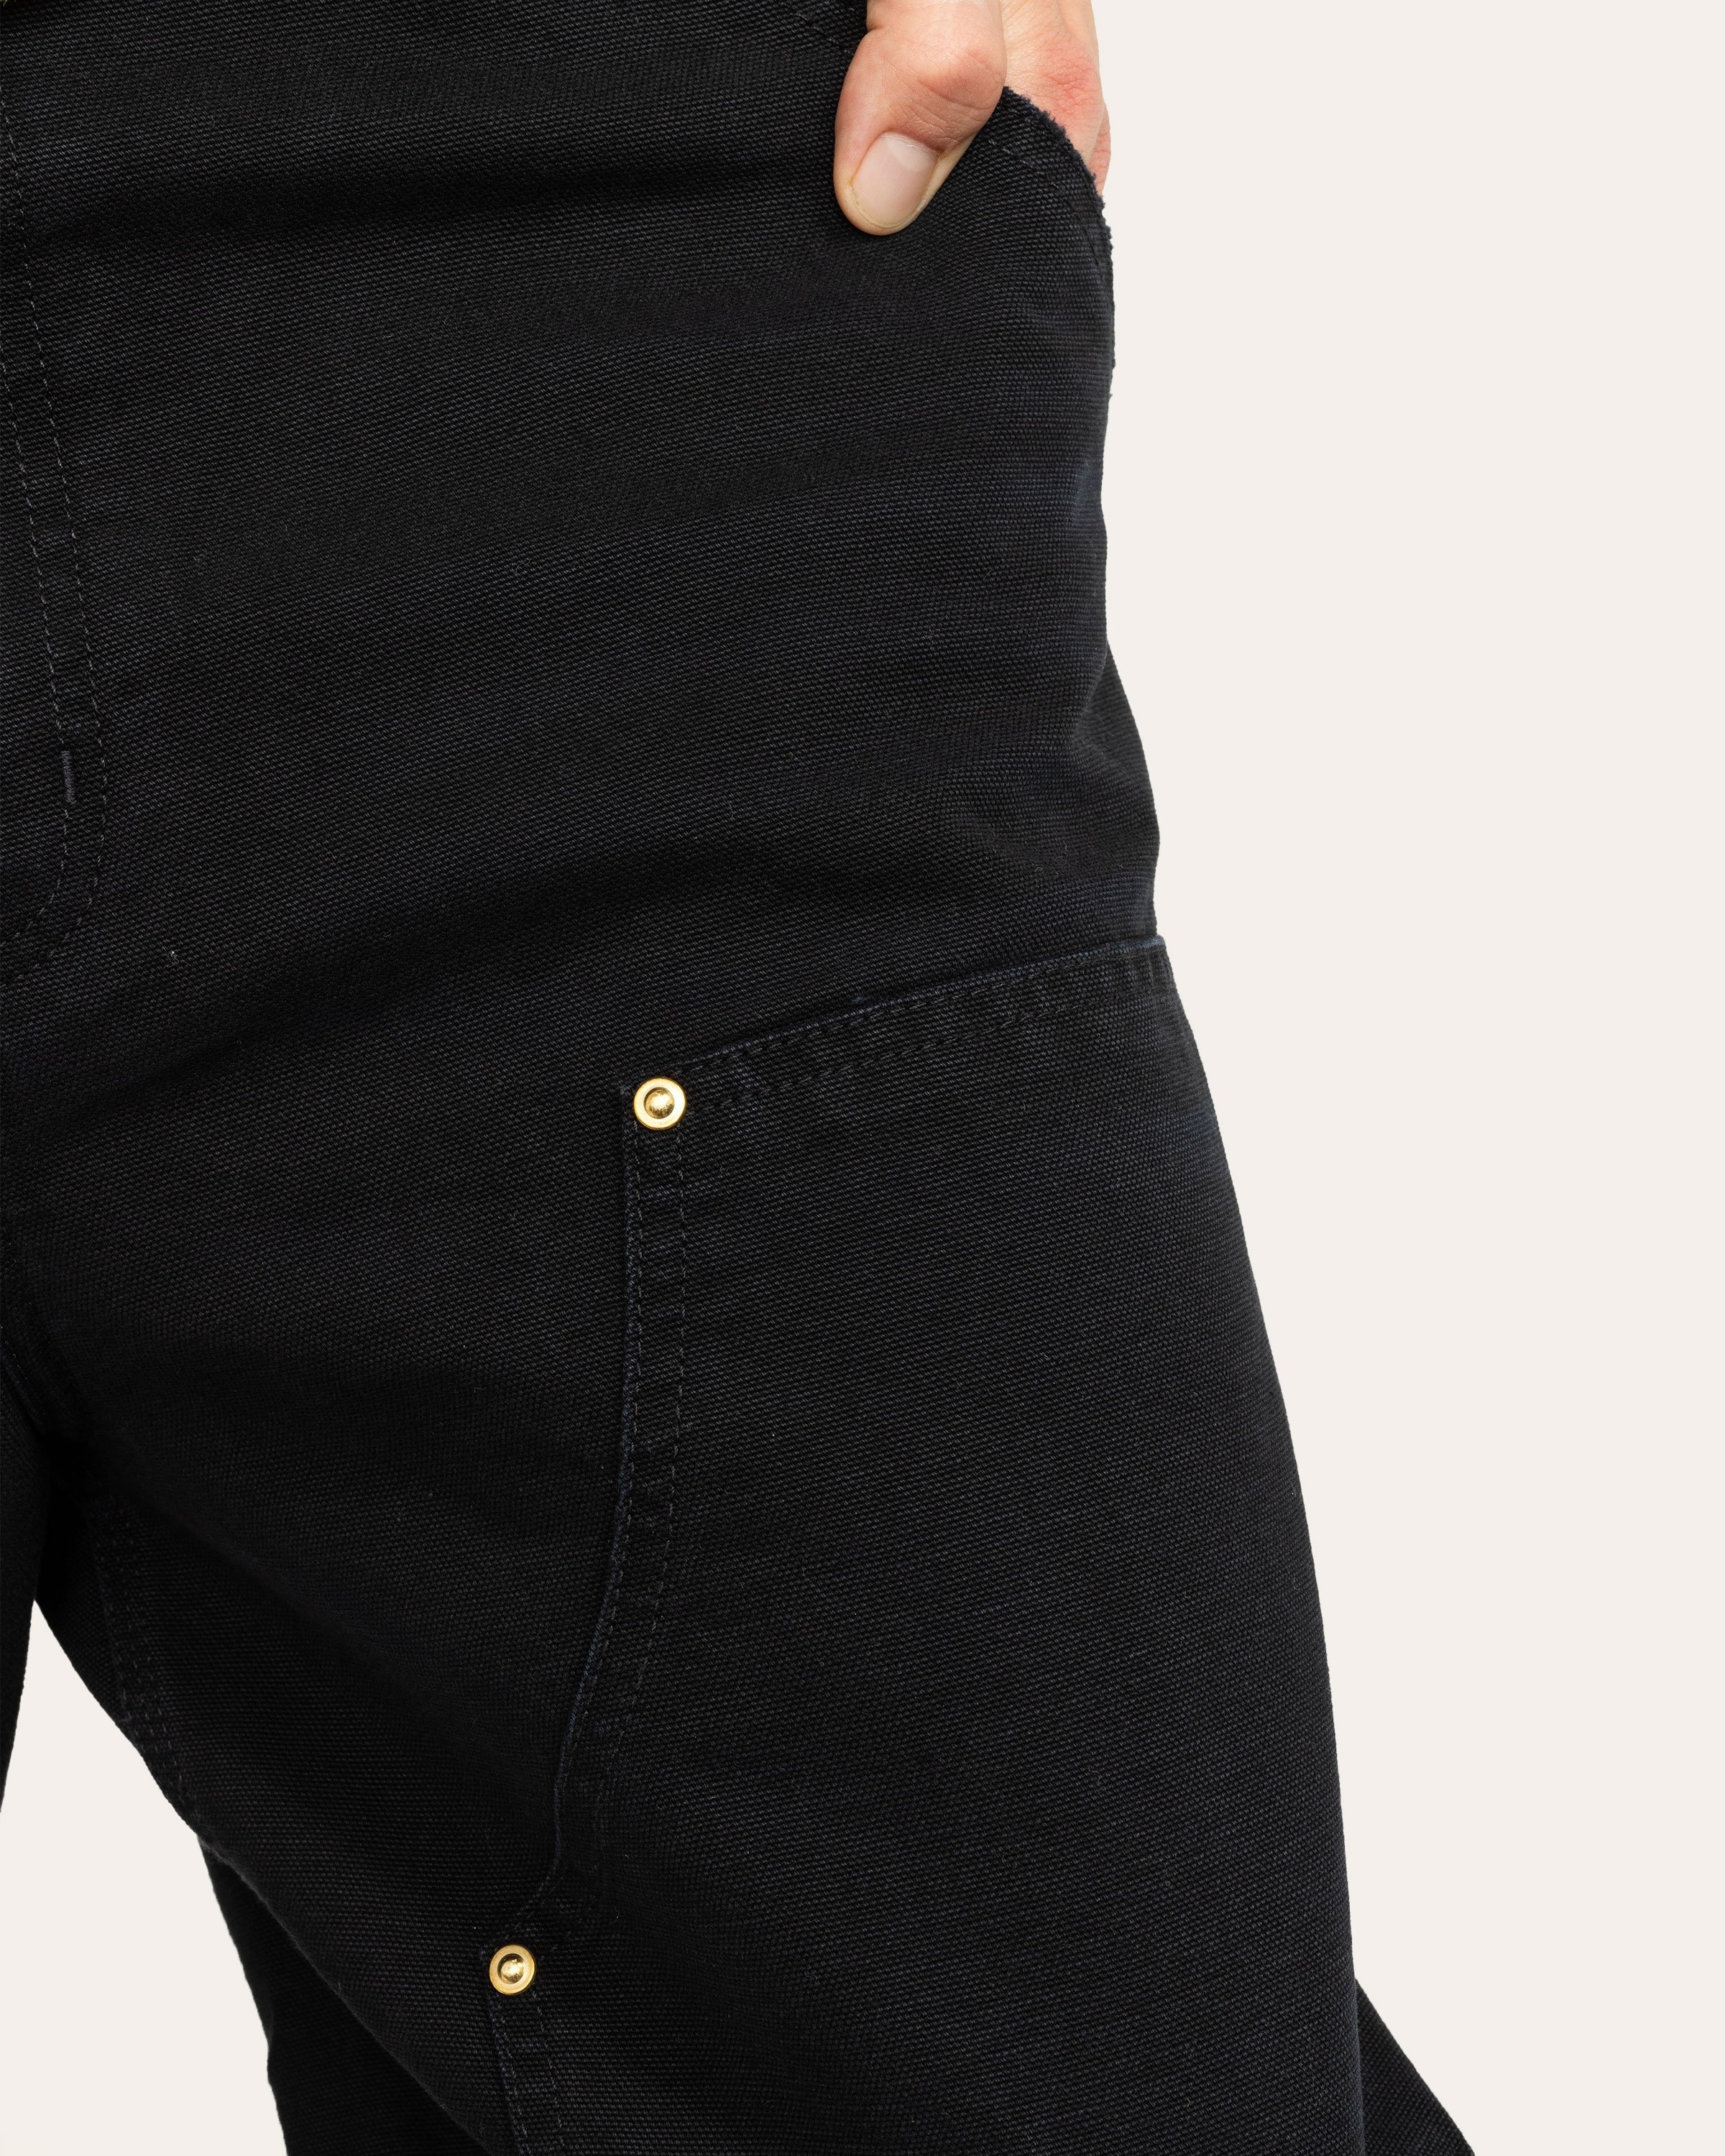 Carhartt WIP – Double Knee Pant Black - Pants - Black - Image 4